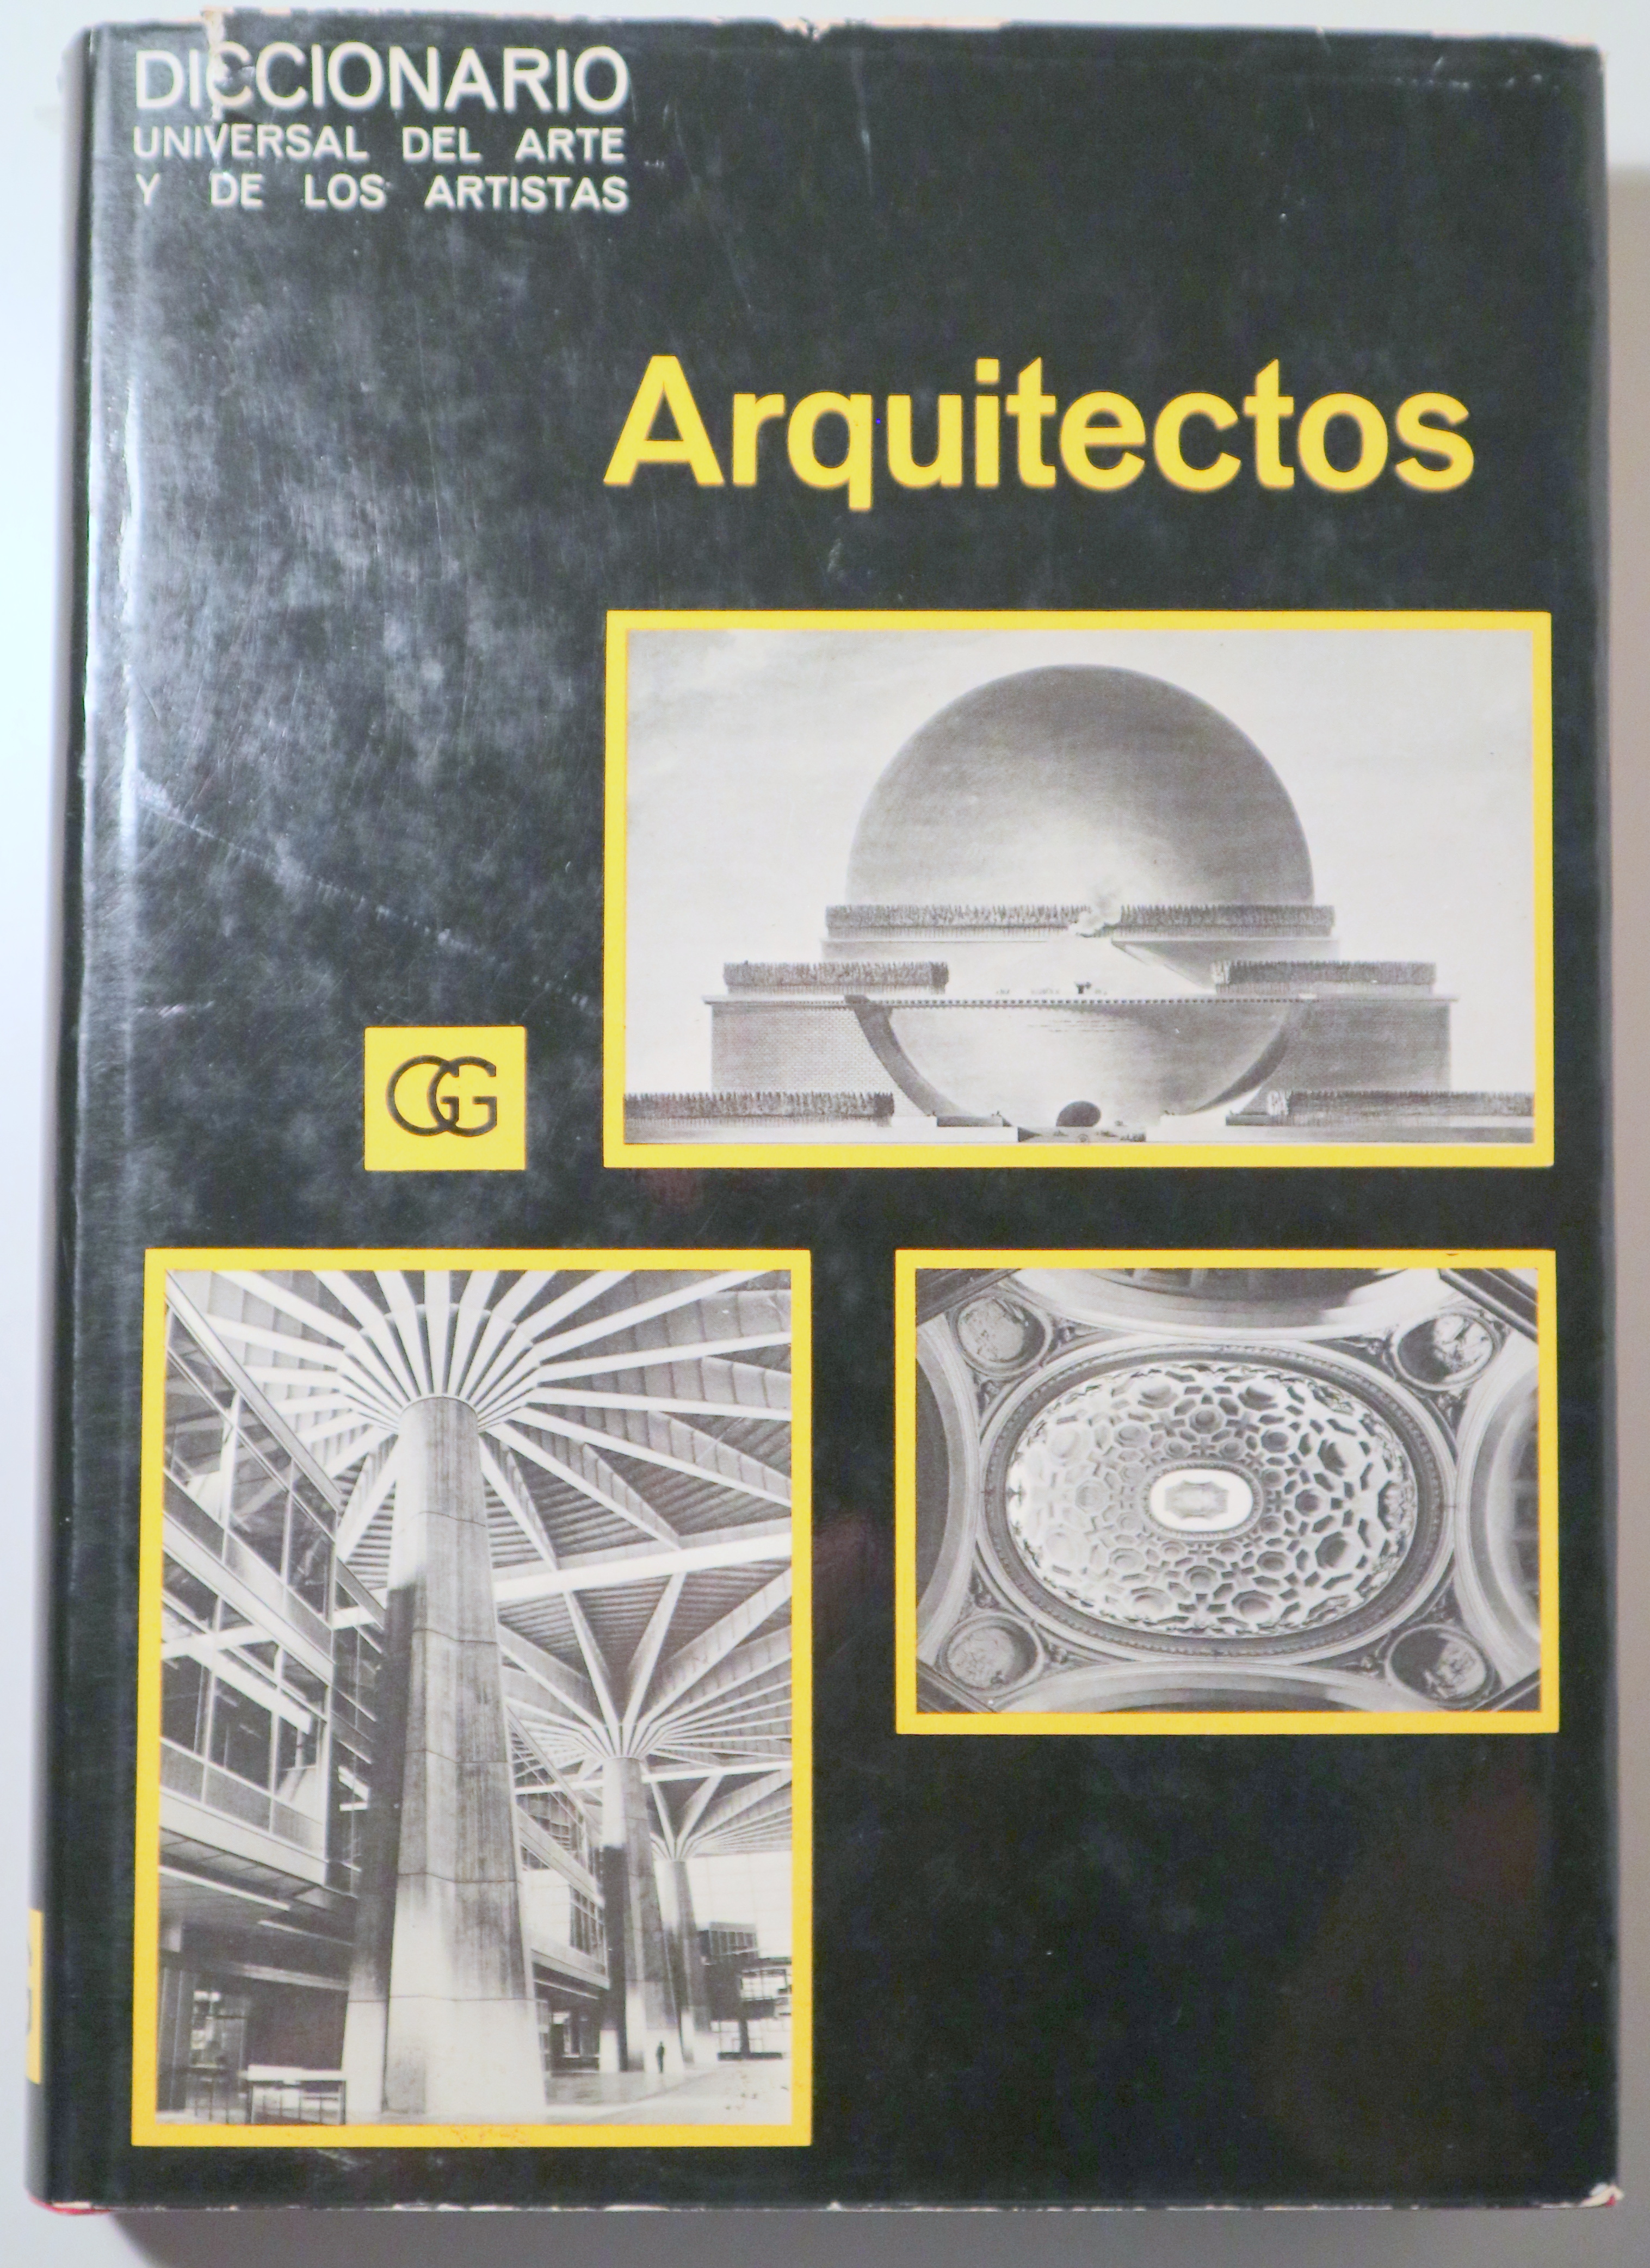 ARQUITECTOS. DICCIONARIO UNIVERSAL DEL ARTE Y DE LOS ARTISTAS - Barcelona 1970 - Muy ilustrado